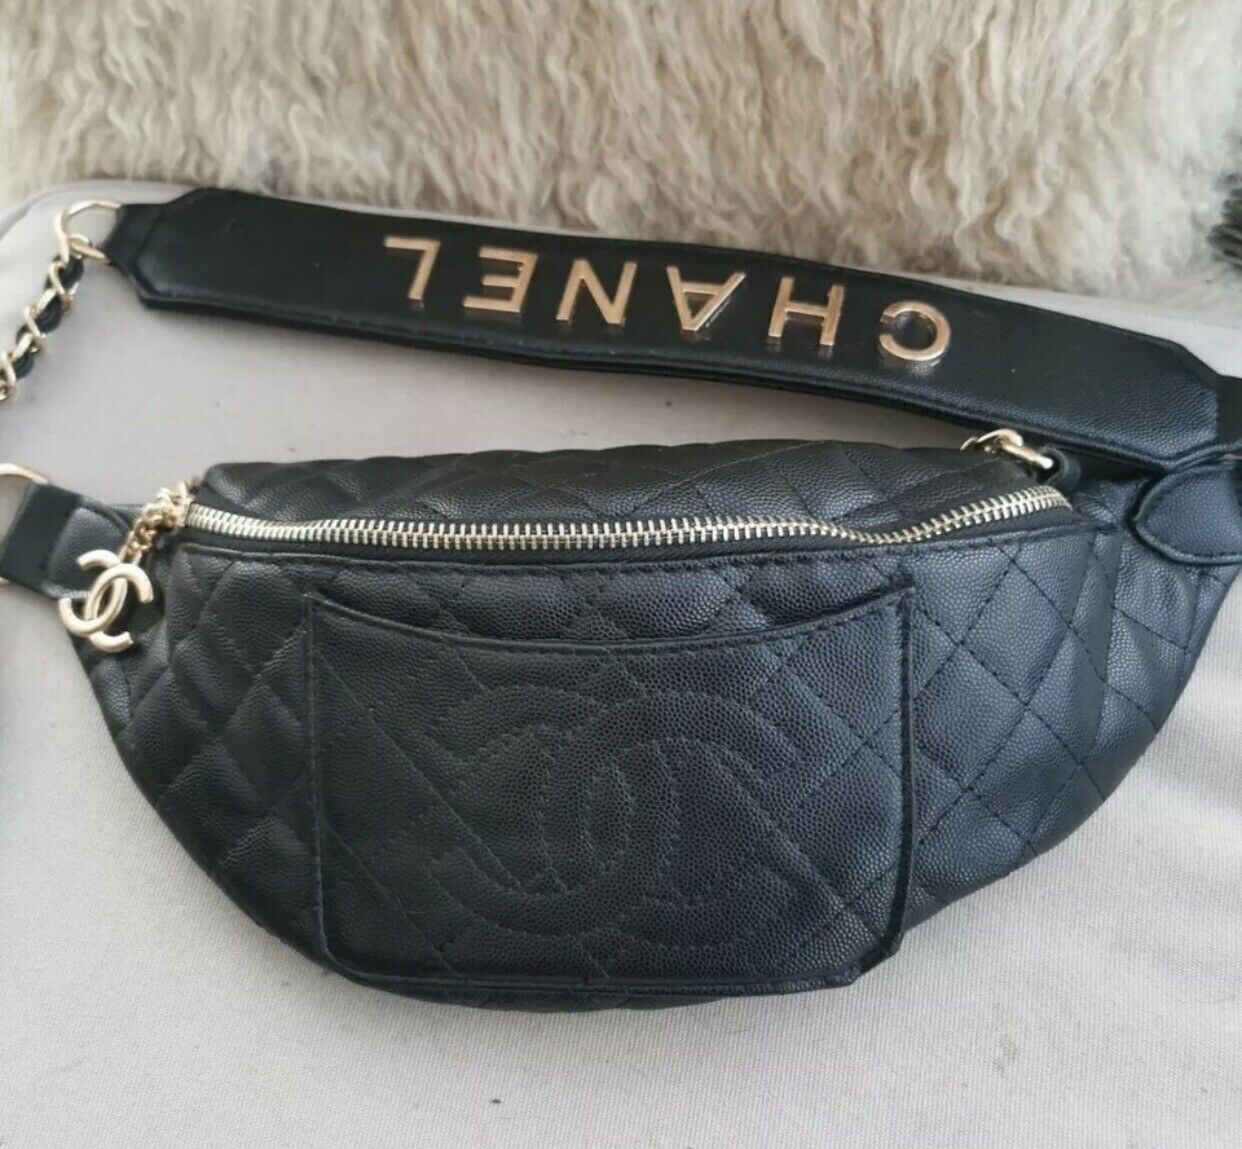 Shop Chanel Vip Gift Bag